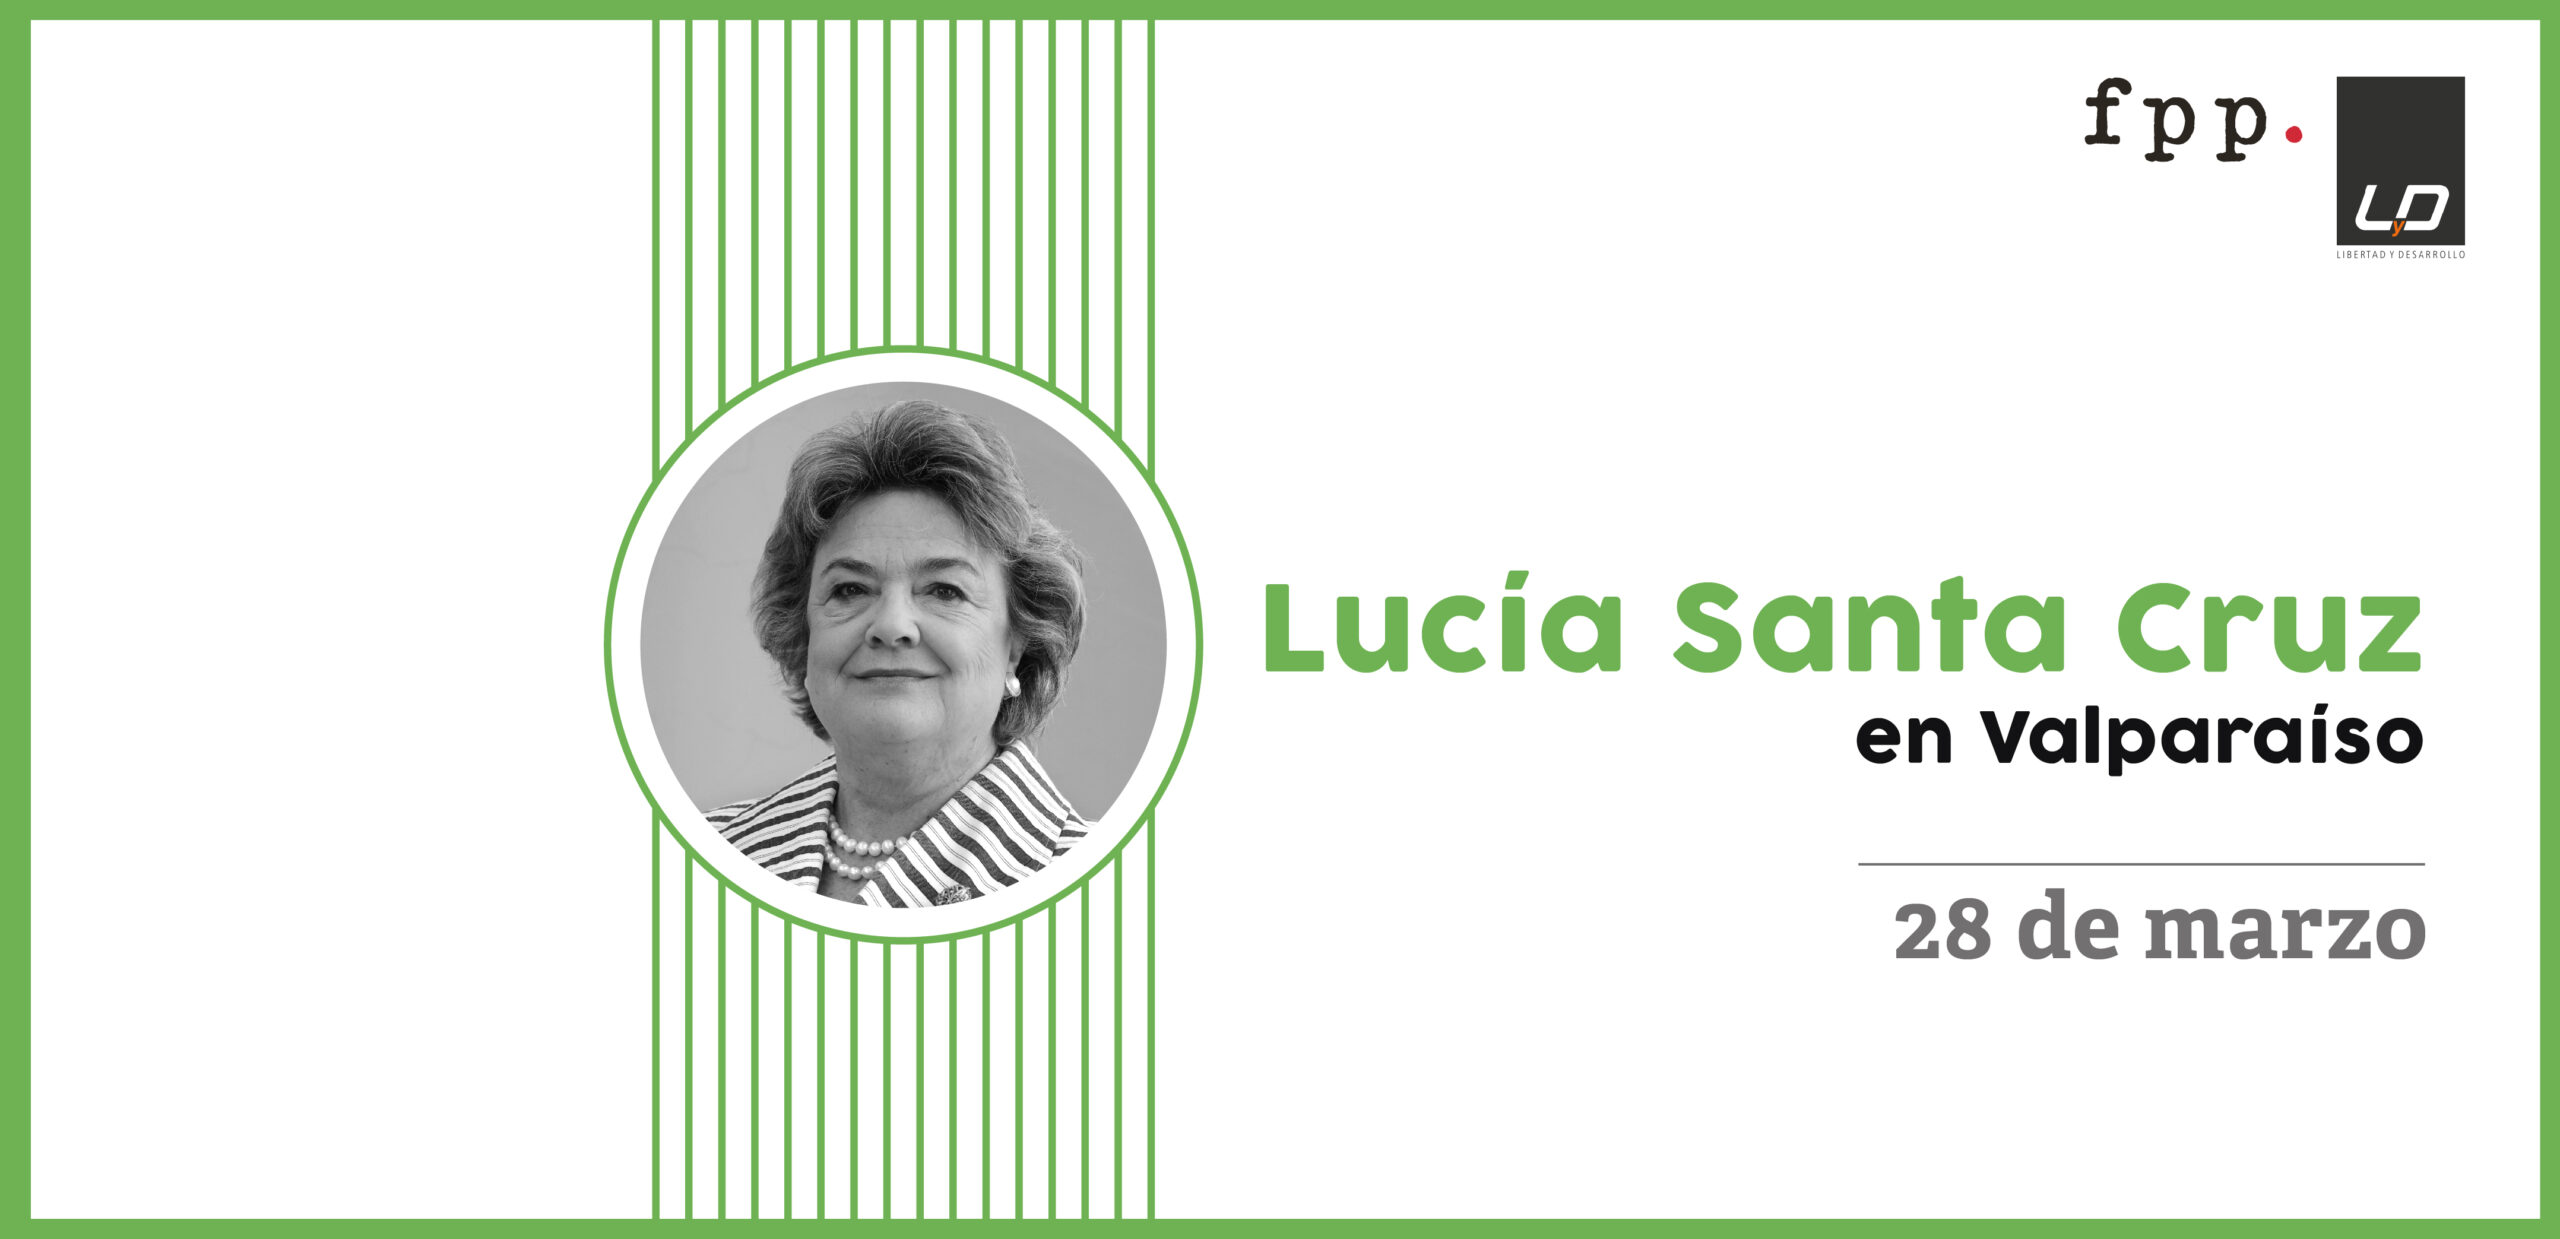 Lanzamiento libro: “La igualdad liberal” de Lucía Santa Cruz en Valparaíso